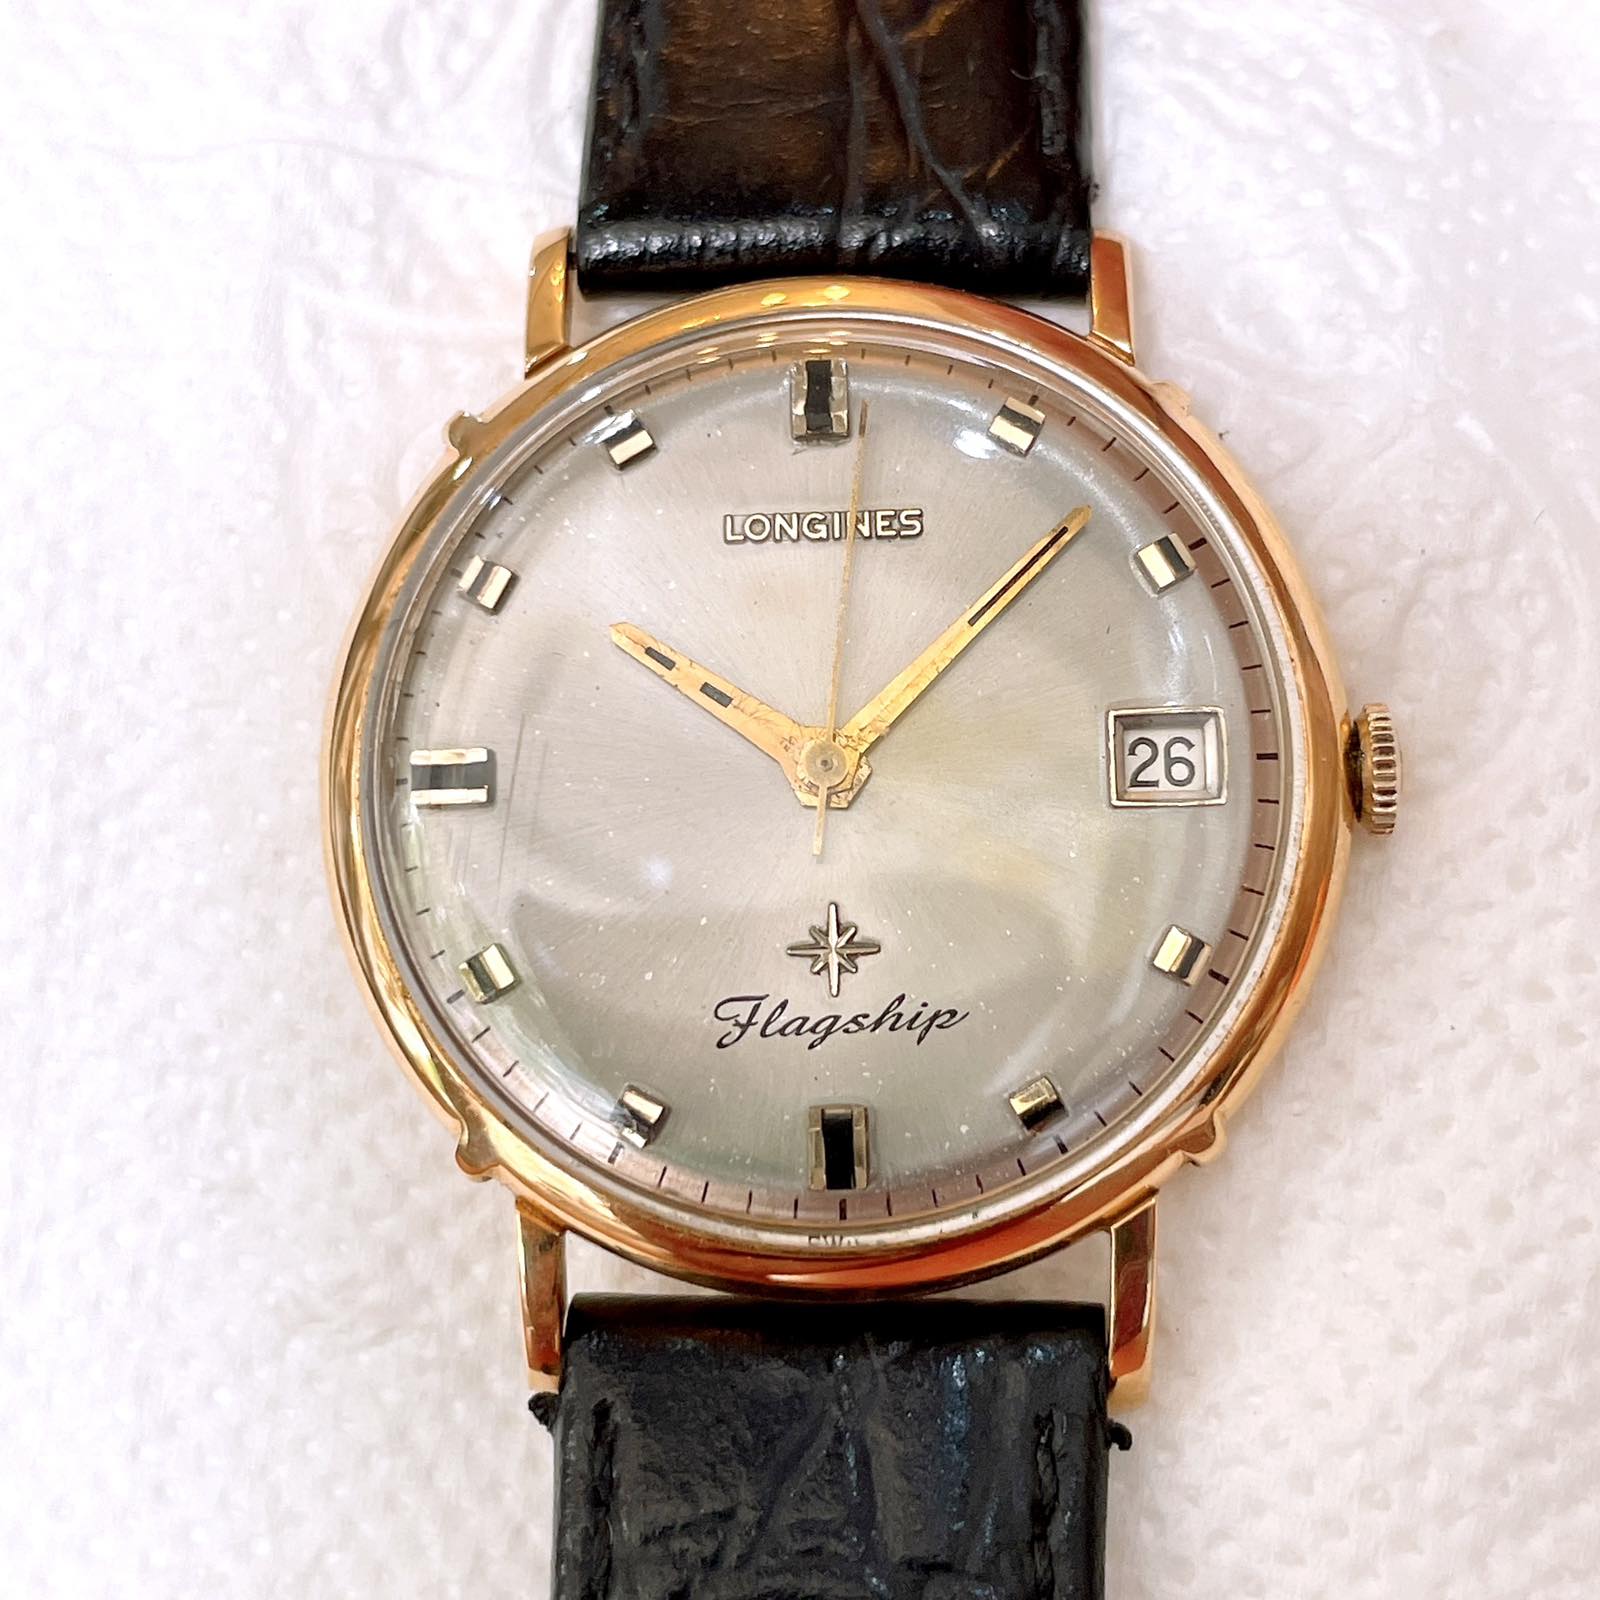 Đồng hồ cổ Longines FlagShip lên dây vàng hồng đúc 18k chính hãng Thụy Sĩ